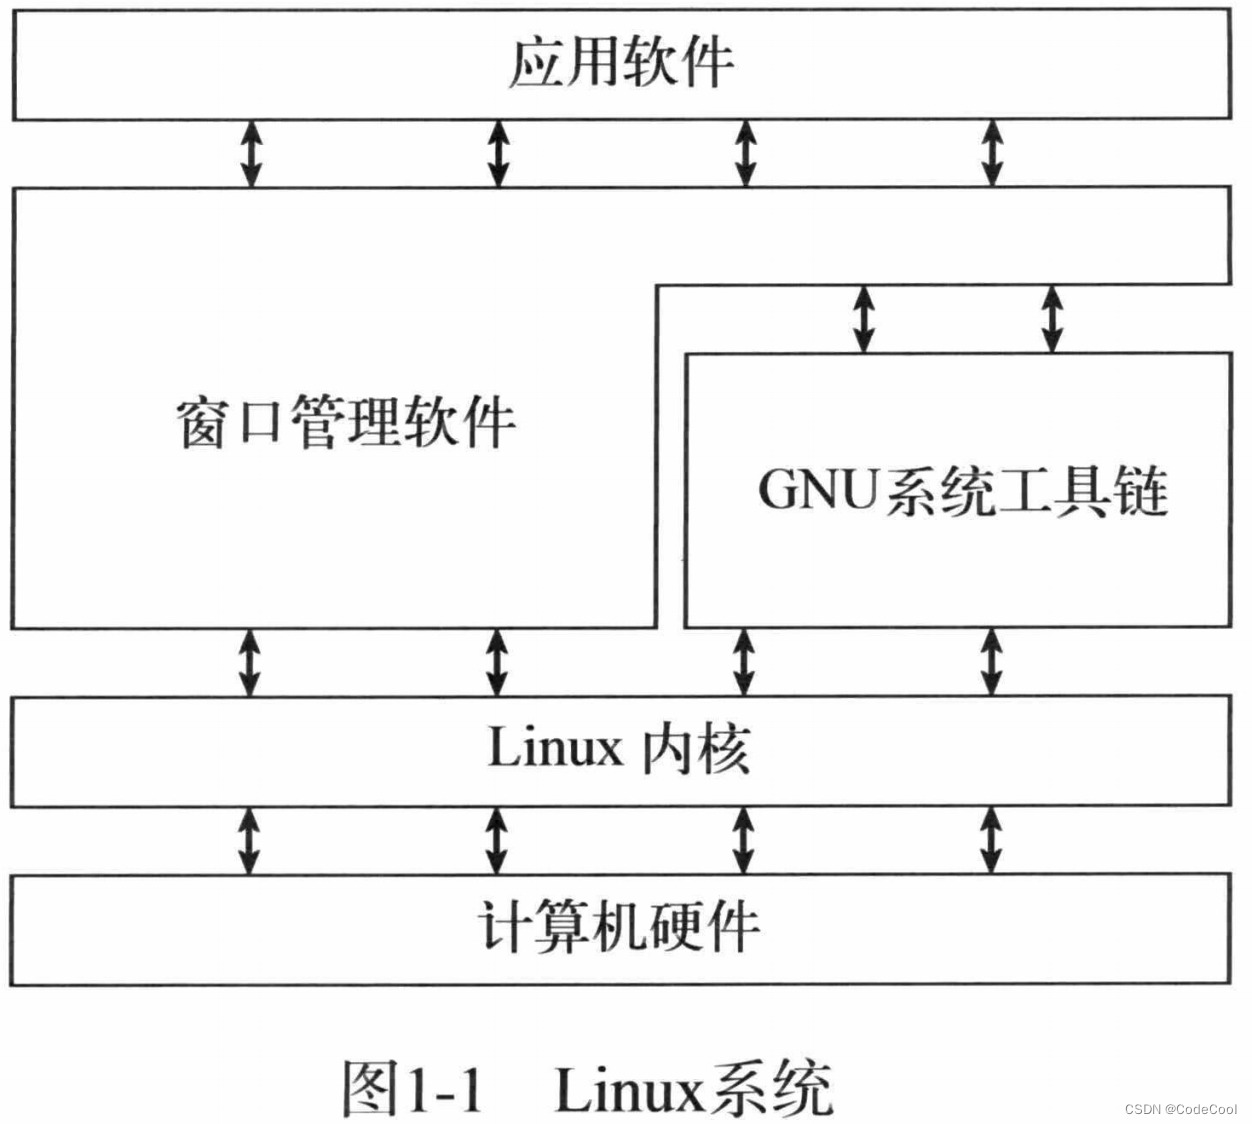 Linux的组成关系及结构图是什么？